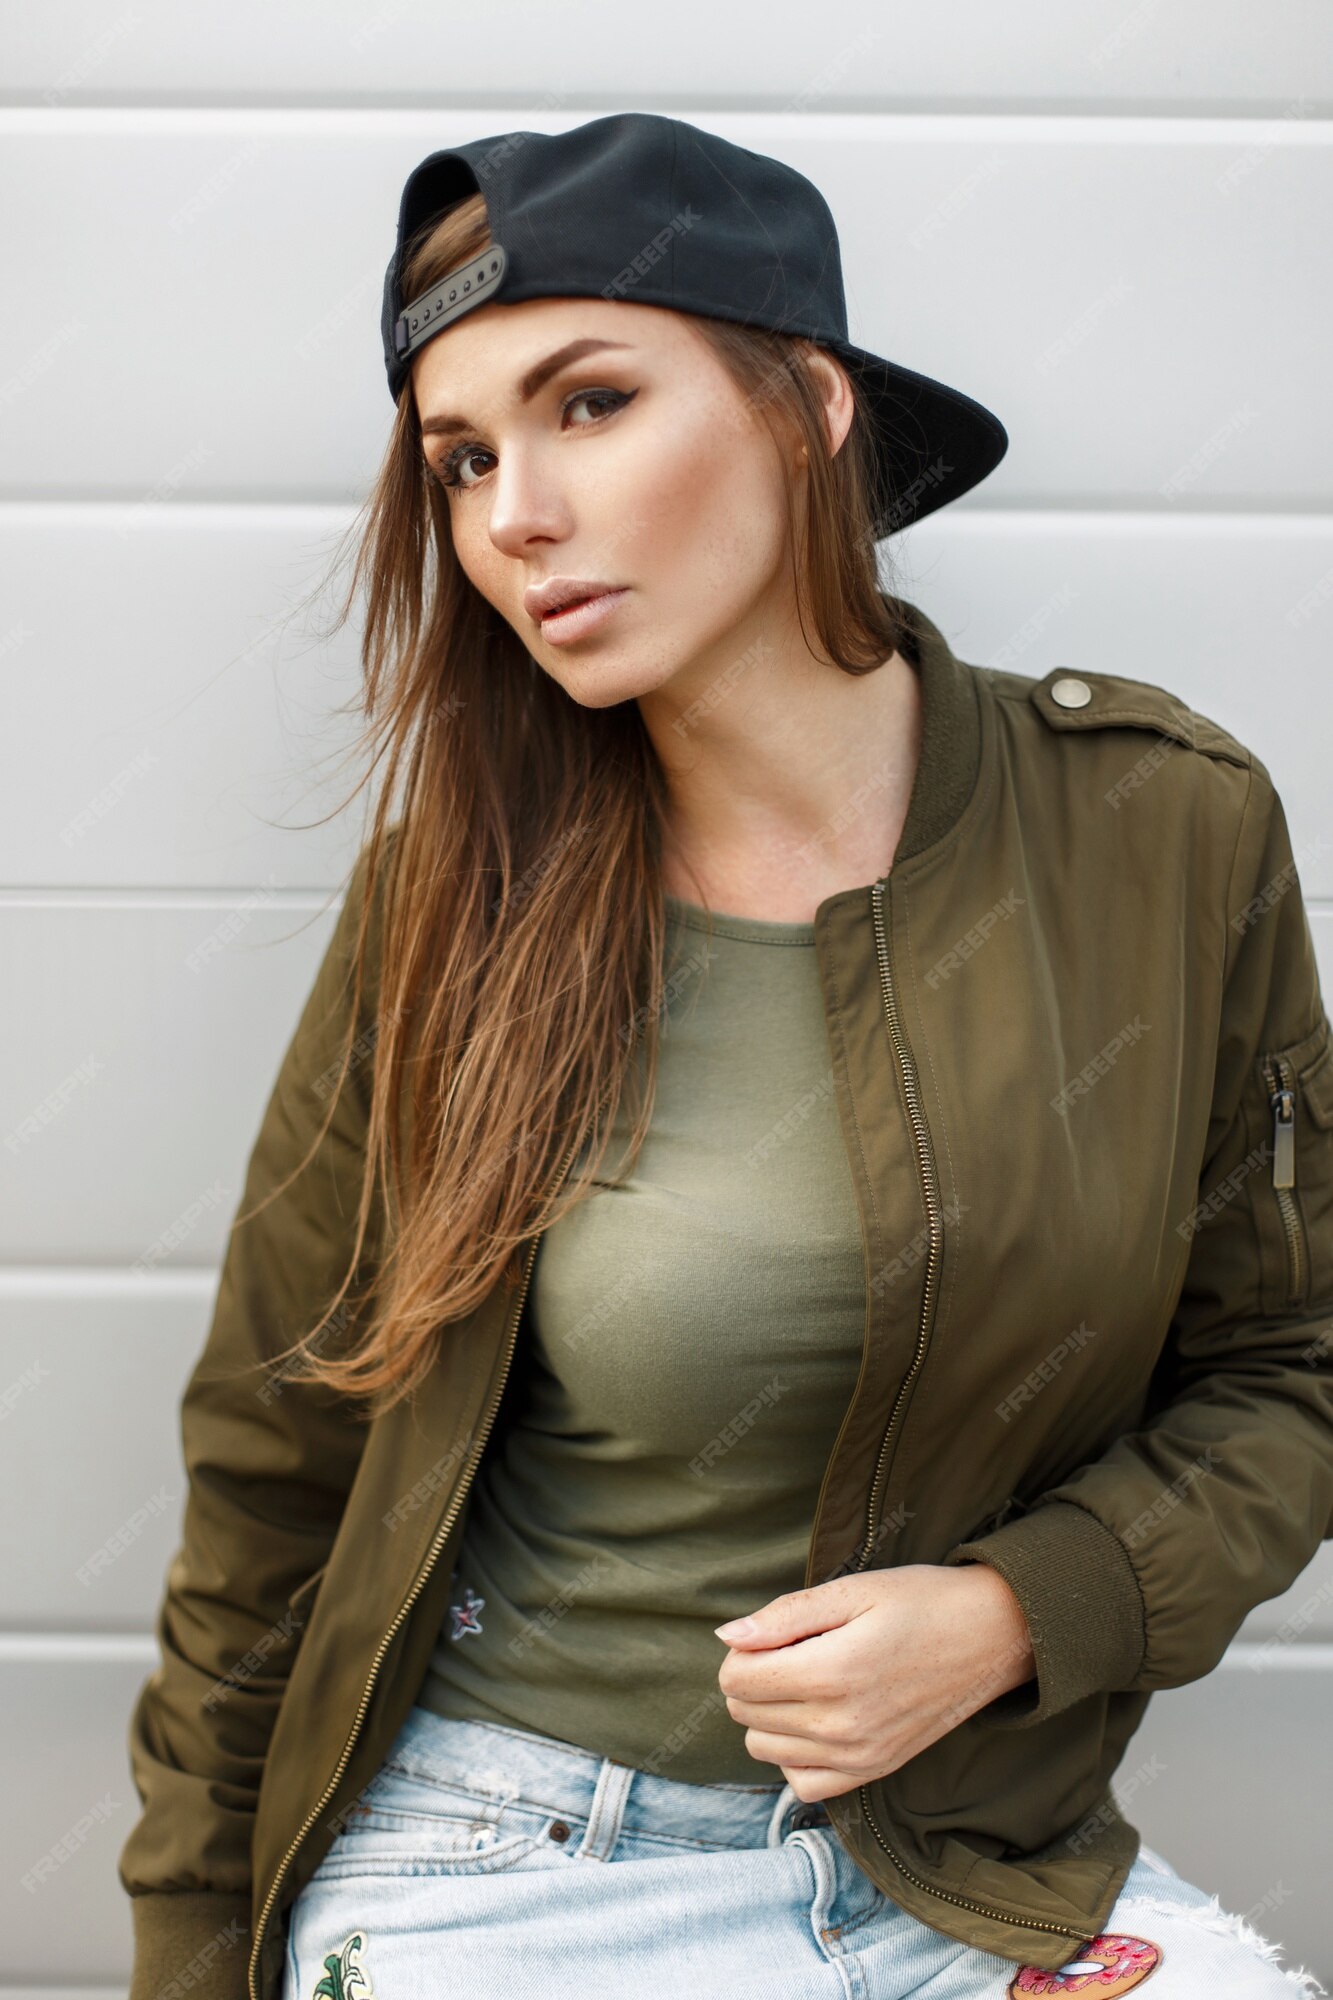 mujer joven con una gorra de béisbol en una chaqueta verde | Foto Premium